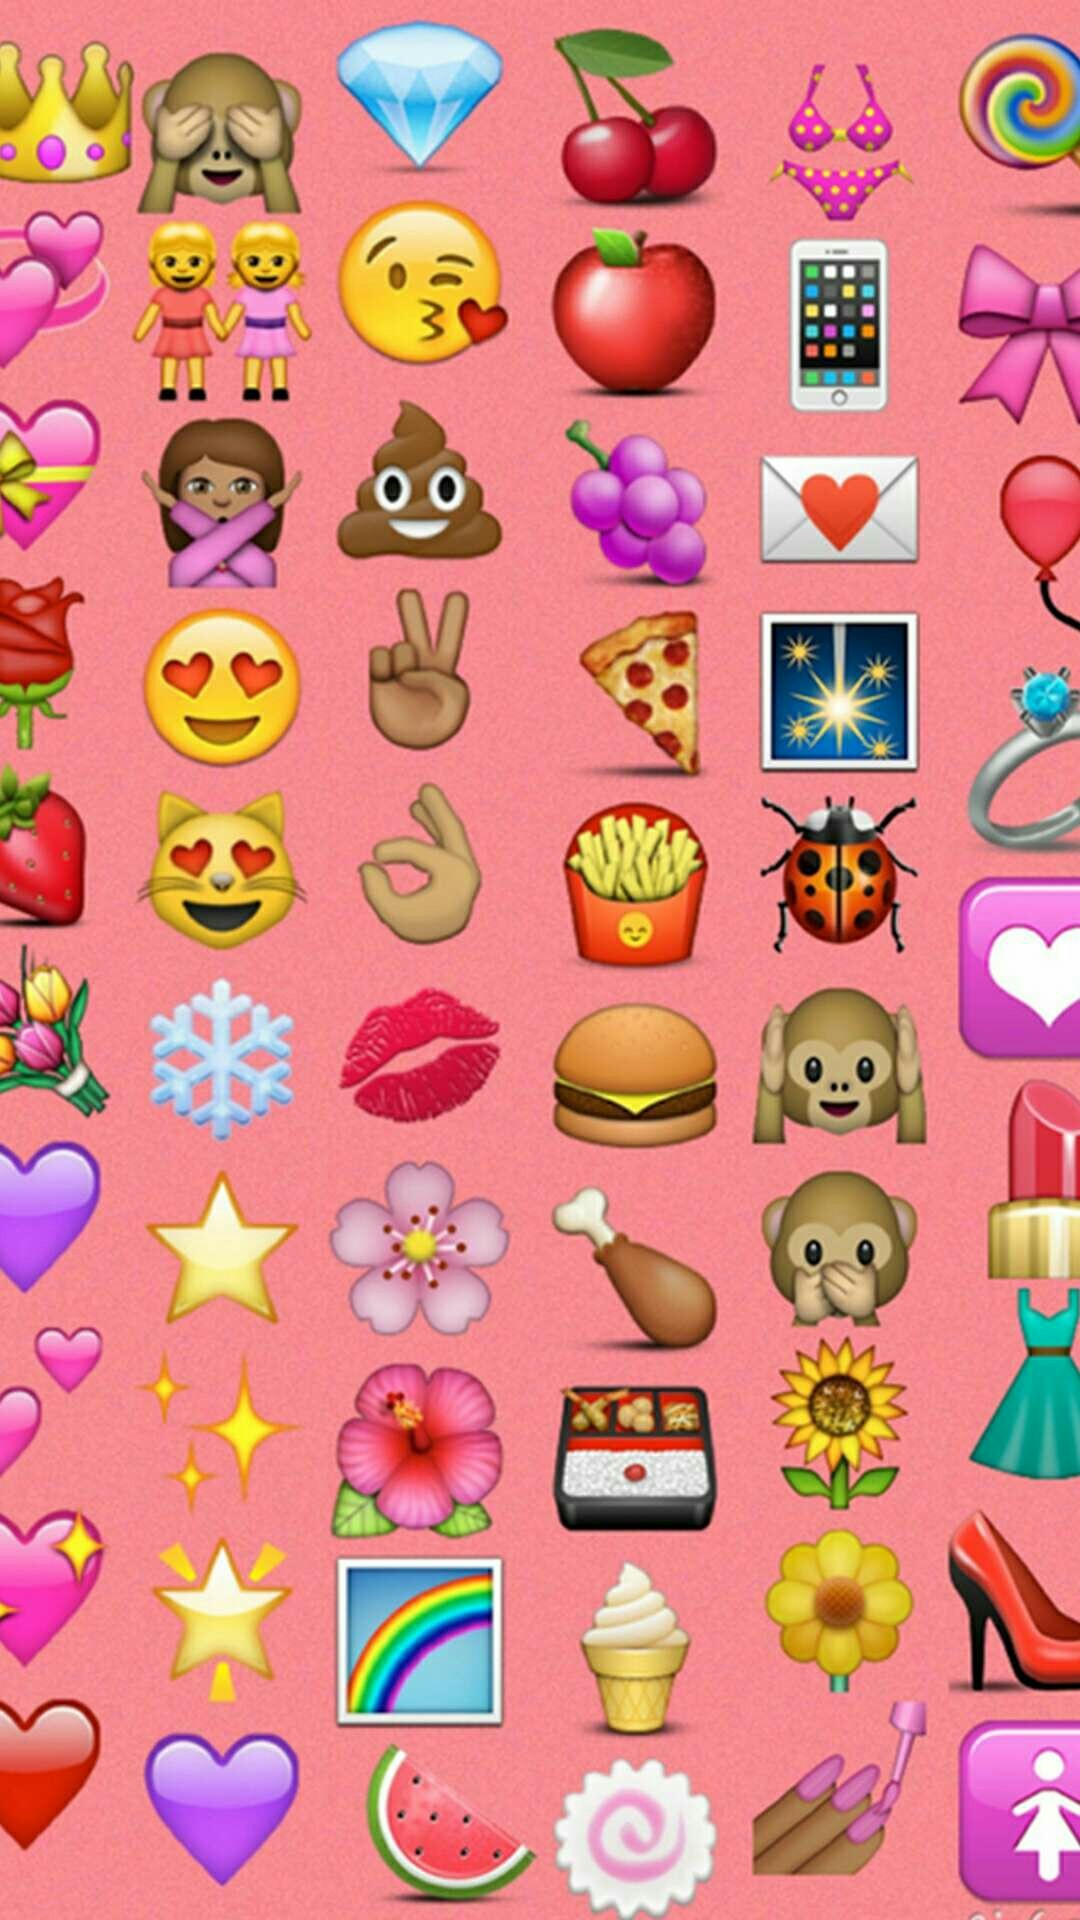 new emojis for mac desktop